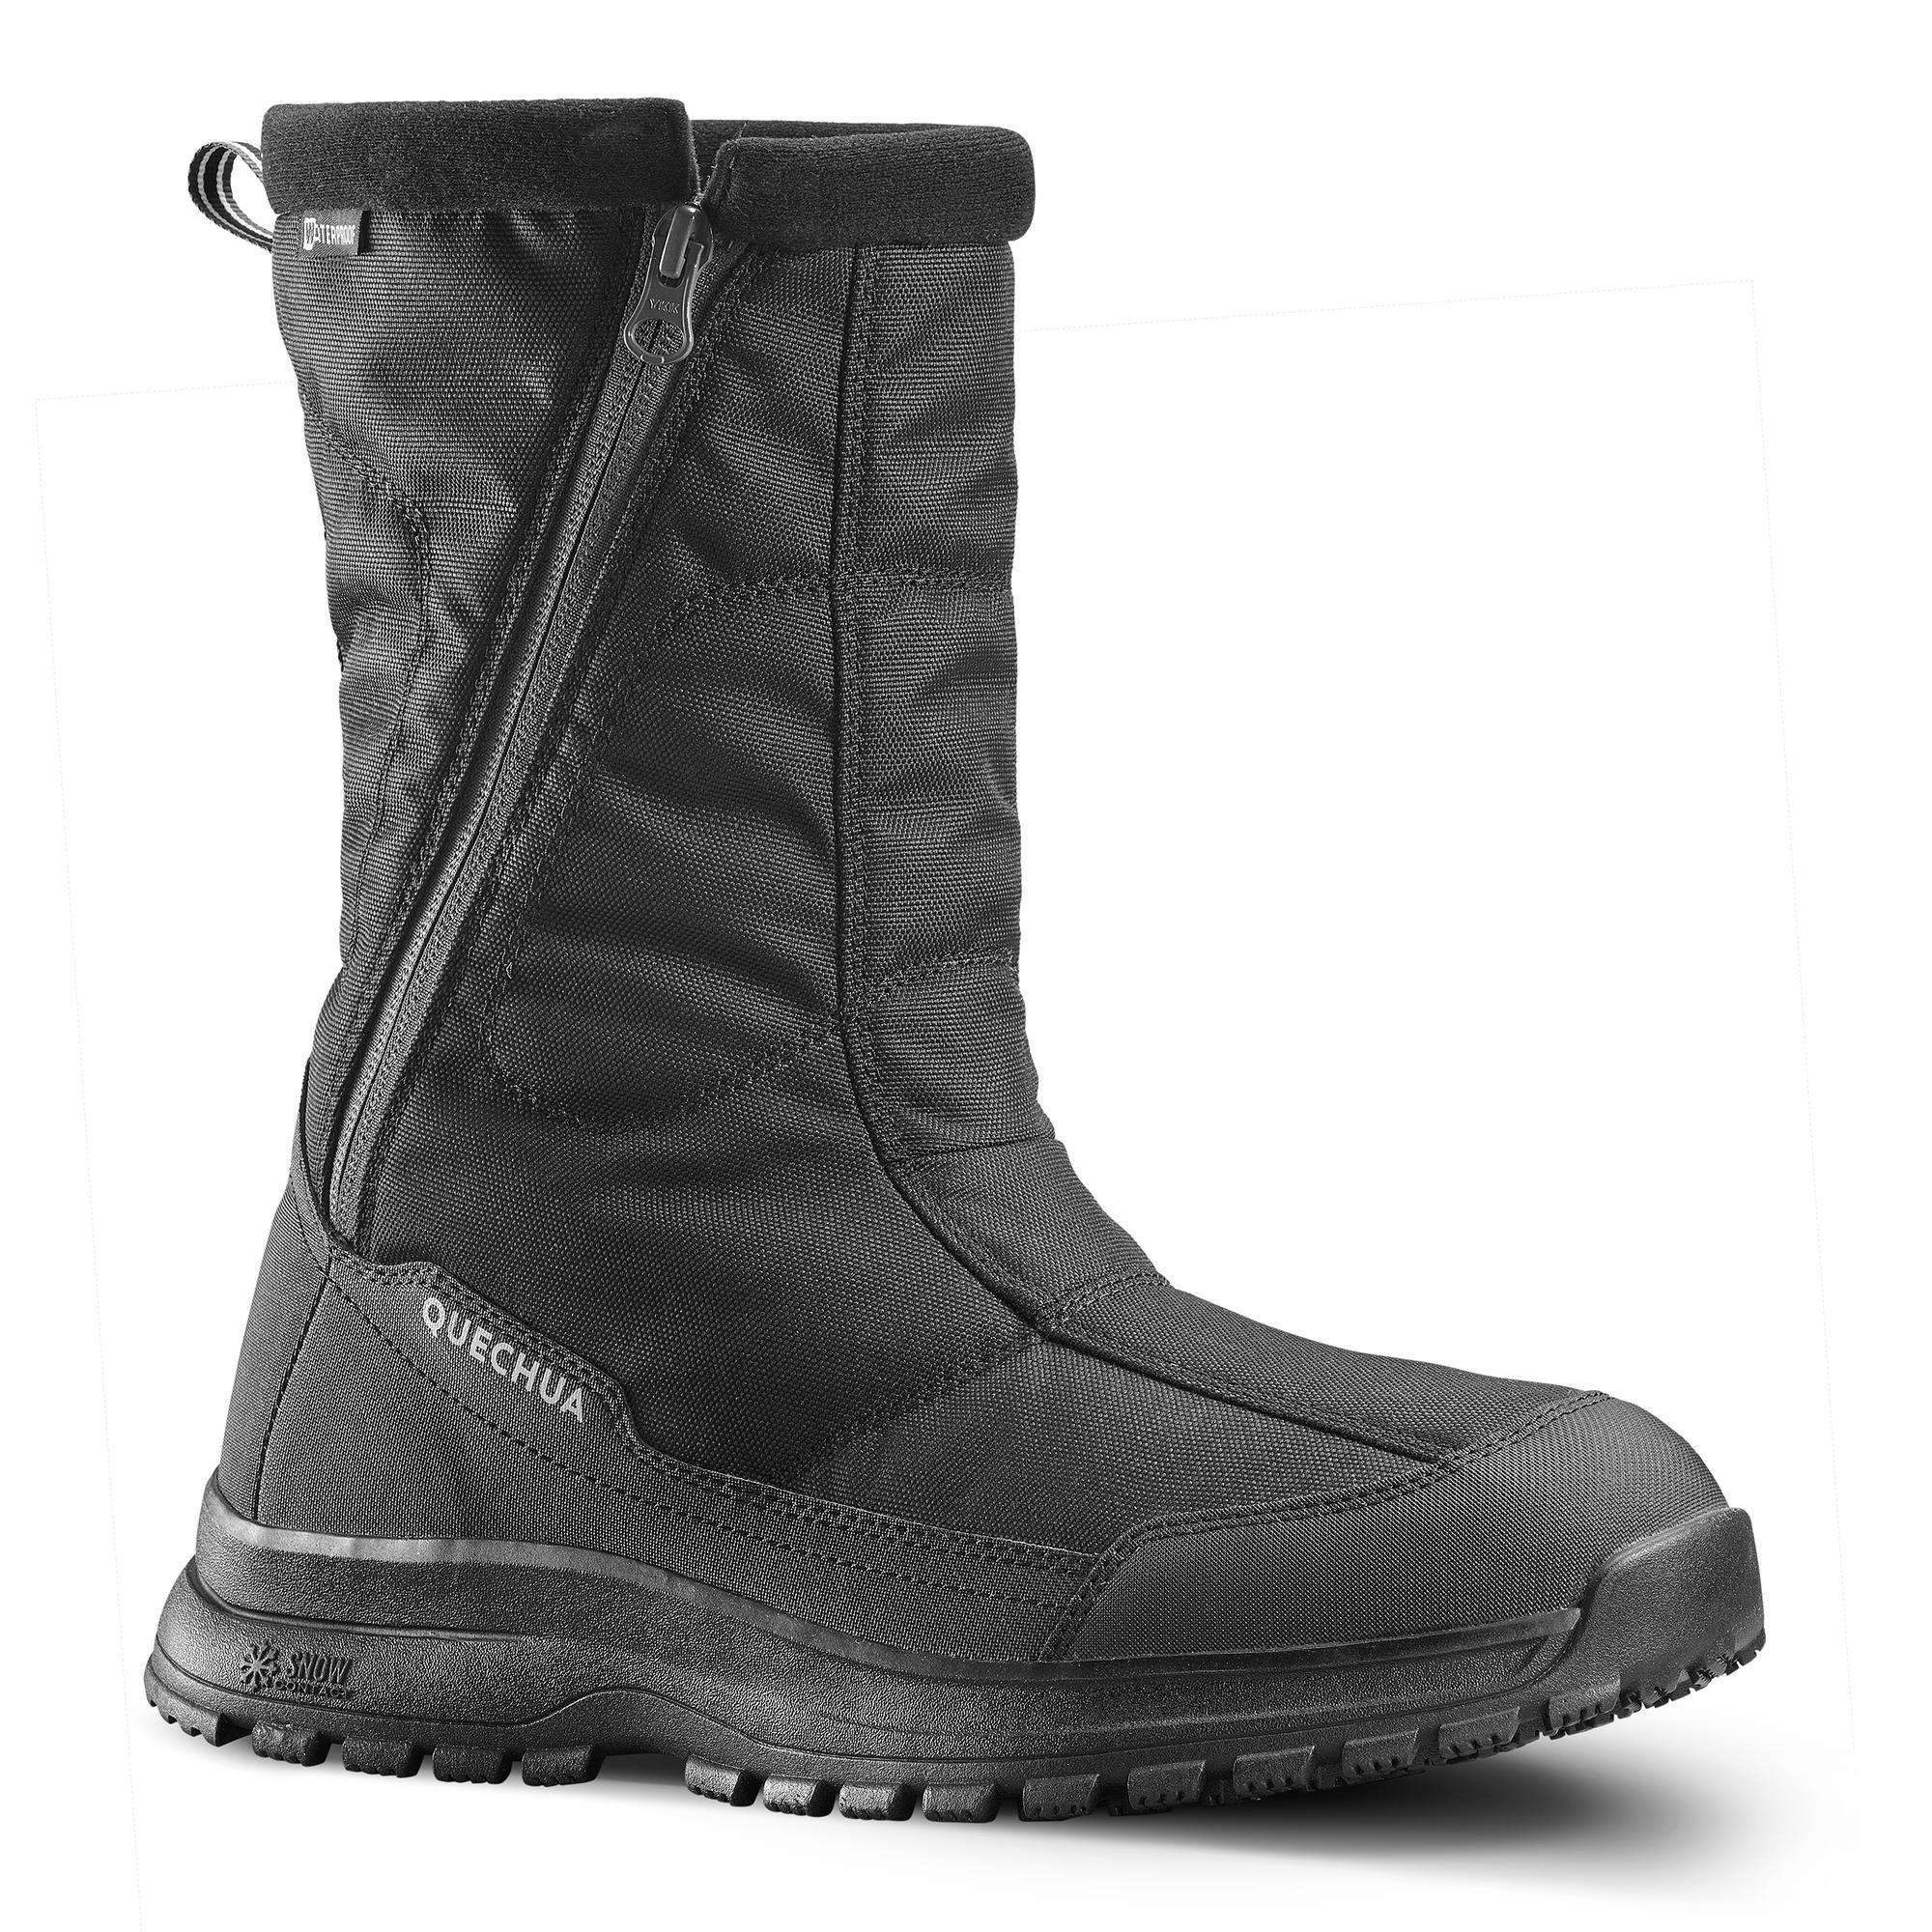 цена Теплые водонепроницаемые походные ботинки Decathlon — молния Sh100 Quechua, черный